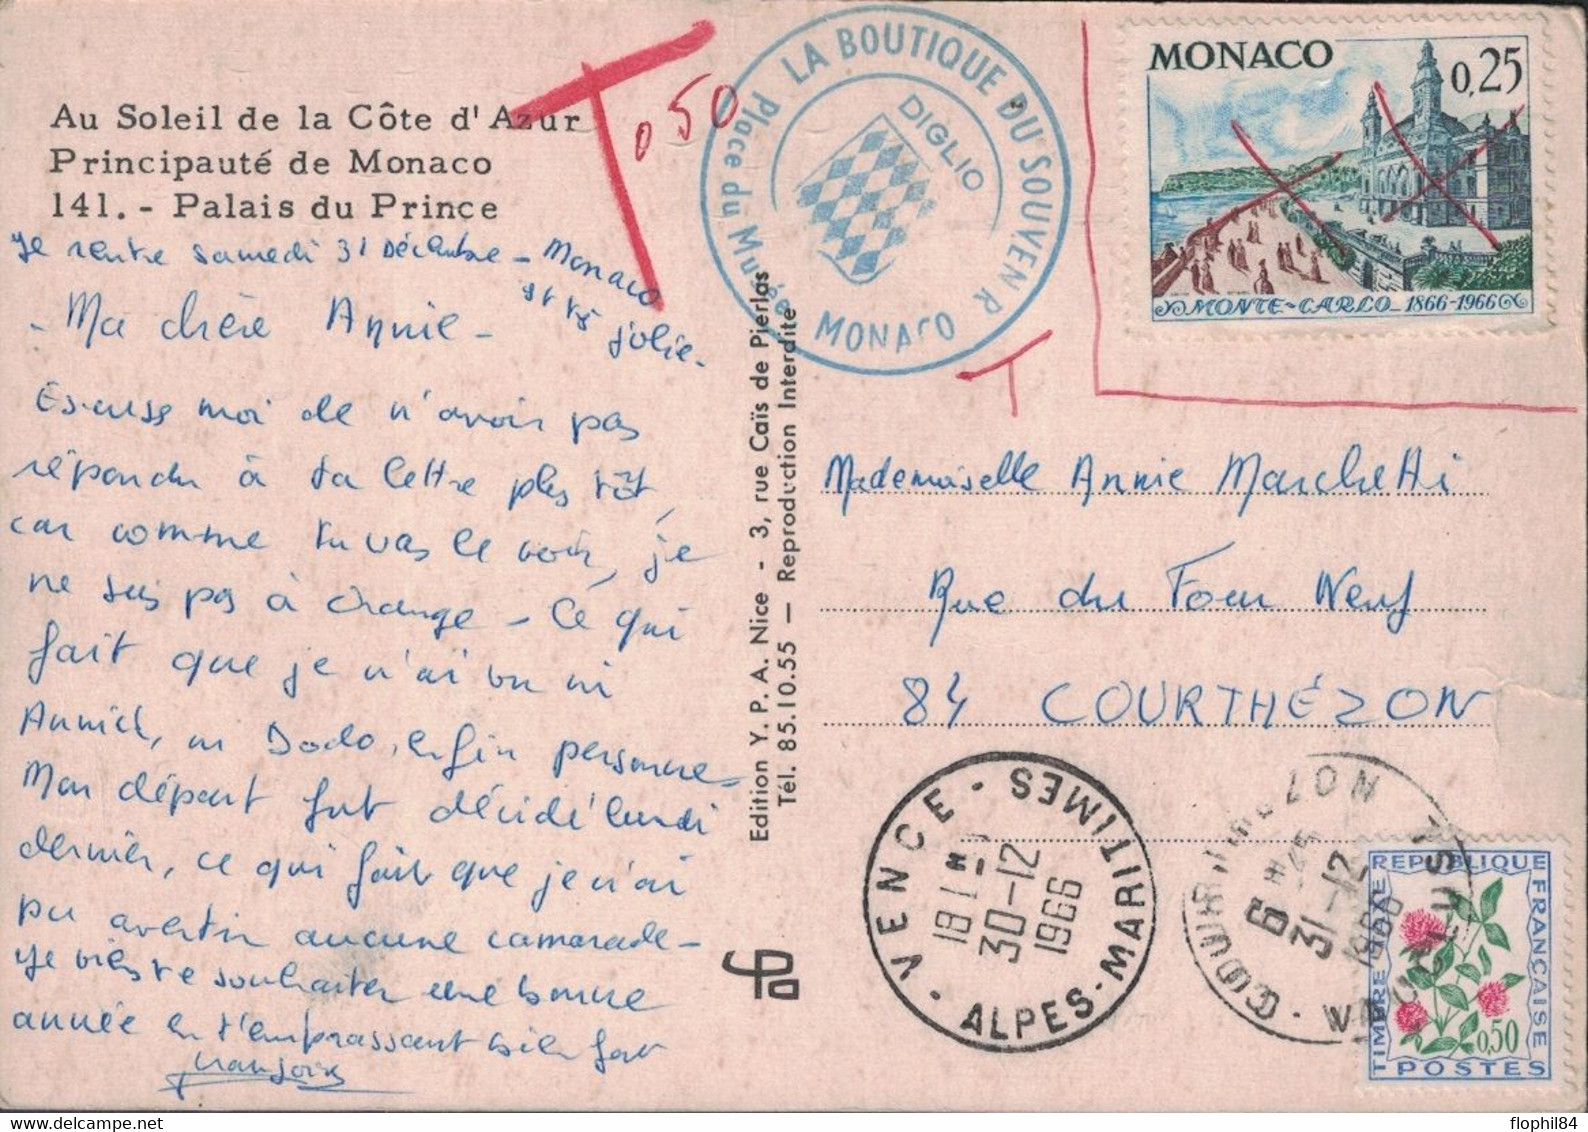 ALPES MARITIMES - VENCE - TIMBRE DE MONACO - NON ACCEPTE AVEC T DE TAXE - TAXE A COURTHEZON - VAUCLUSE - 1859-1959 Storia Postale